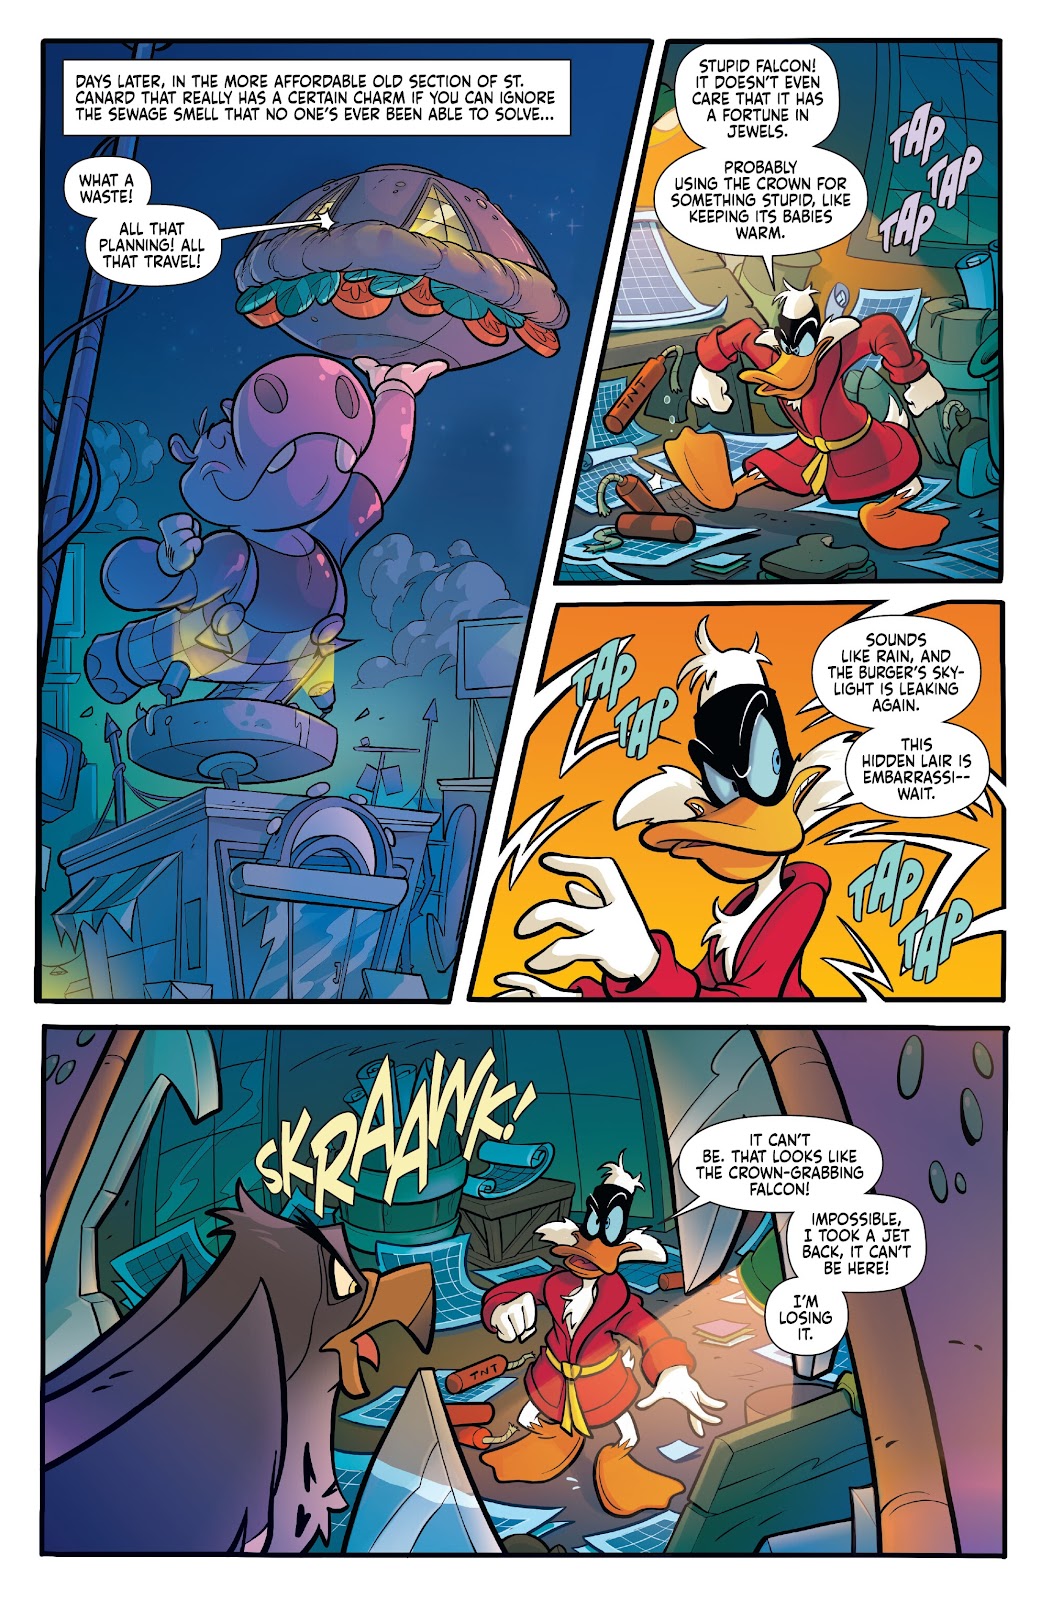 Darkwing Duck: Negaduck issue 5 - Page 16